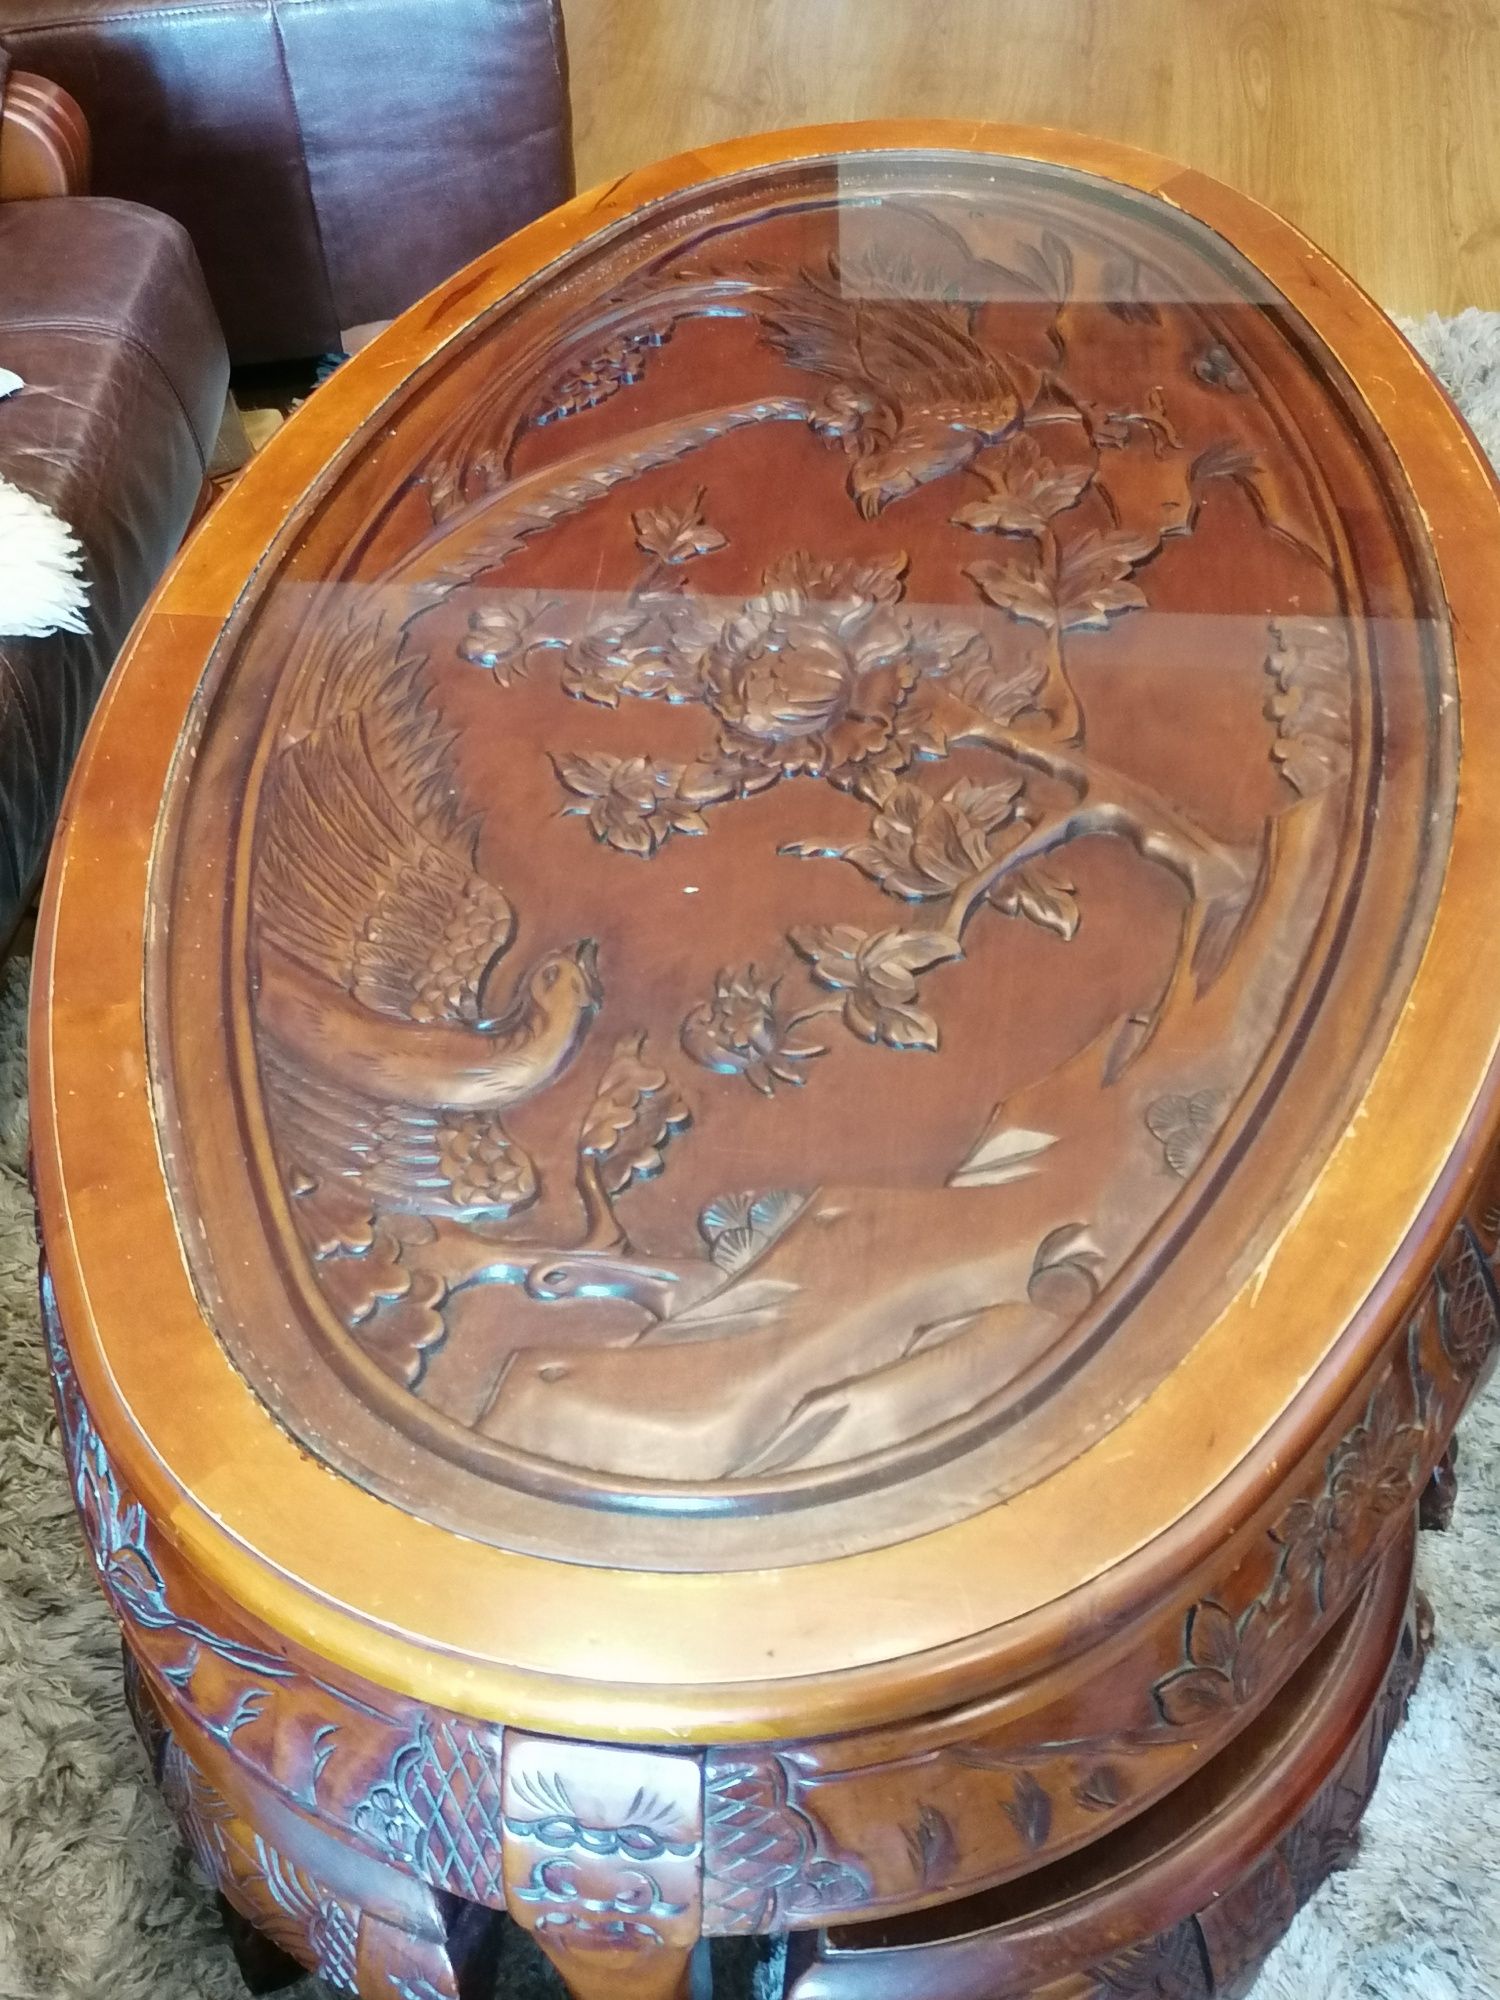 Stary drewniany rzeźbiony stolik kawowy